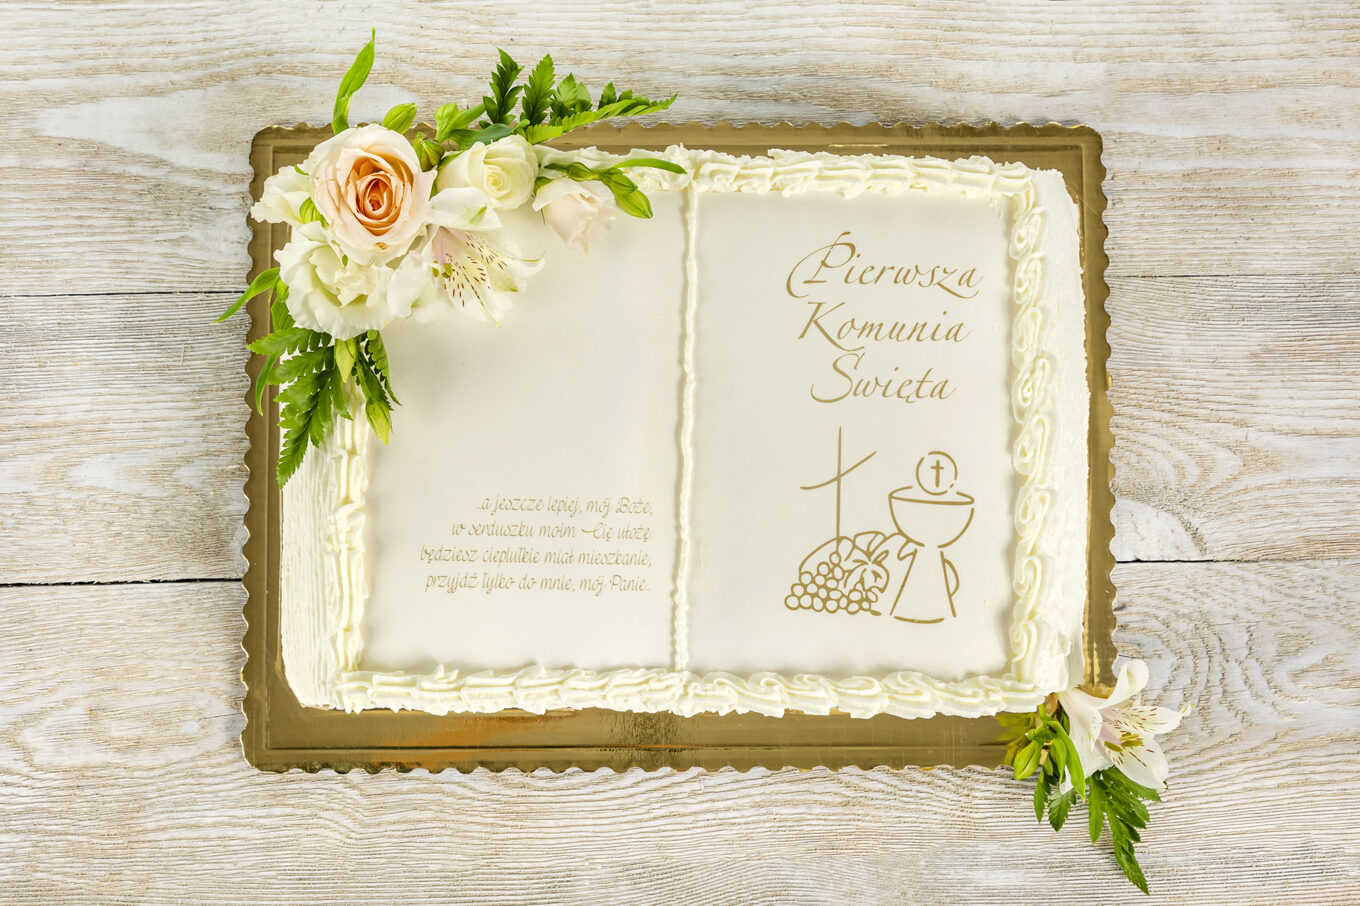 Libro di torte fiori per la comunione Cukiernia Jacek Placek è sinonimo del gusto delle torte fatte in casa a base di prodotti naturali.